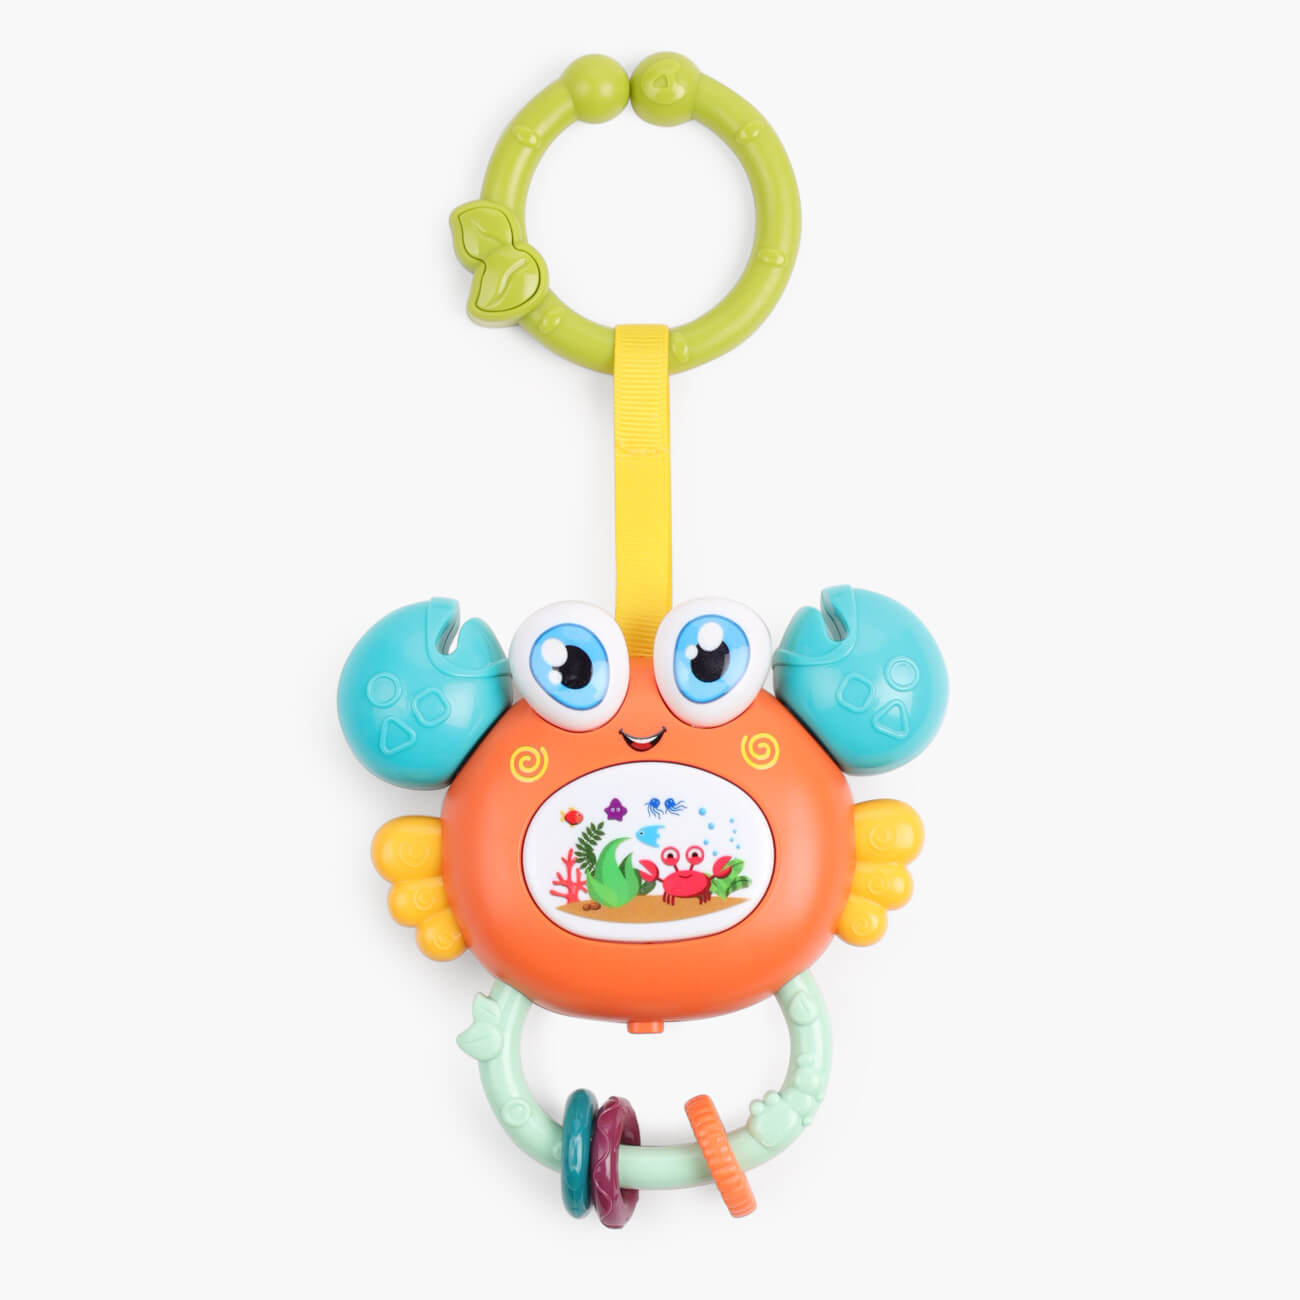 Игрушка развивающая, 11х12 см, музыкальная, пластик, оранжевый, Крабик, Aquatic animals мягкая музыкальная игрушка барашик малышарики 10 см